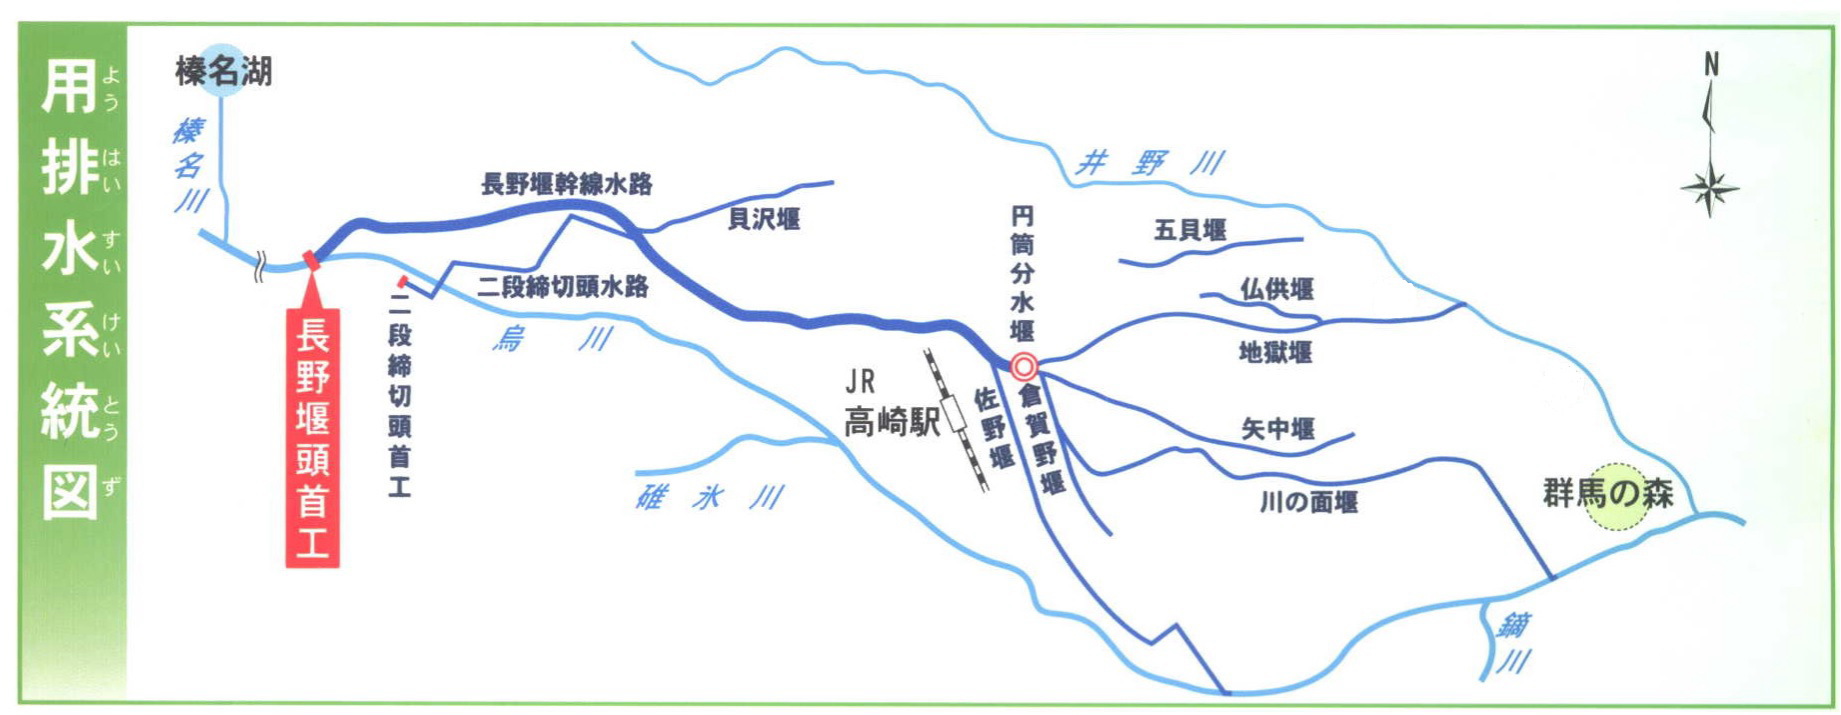 長野堰用排水系統図